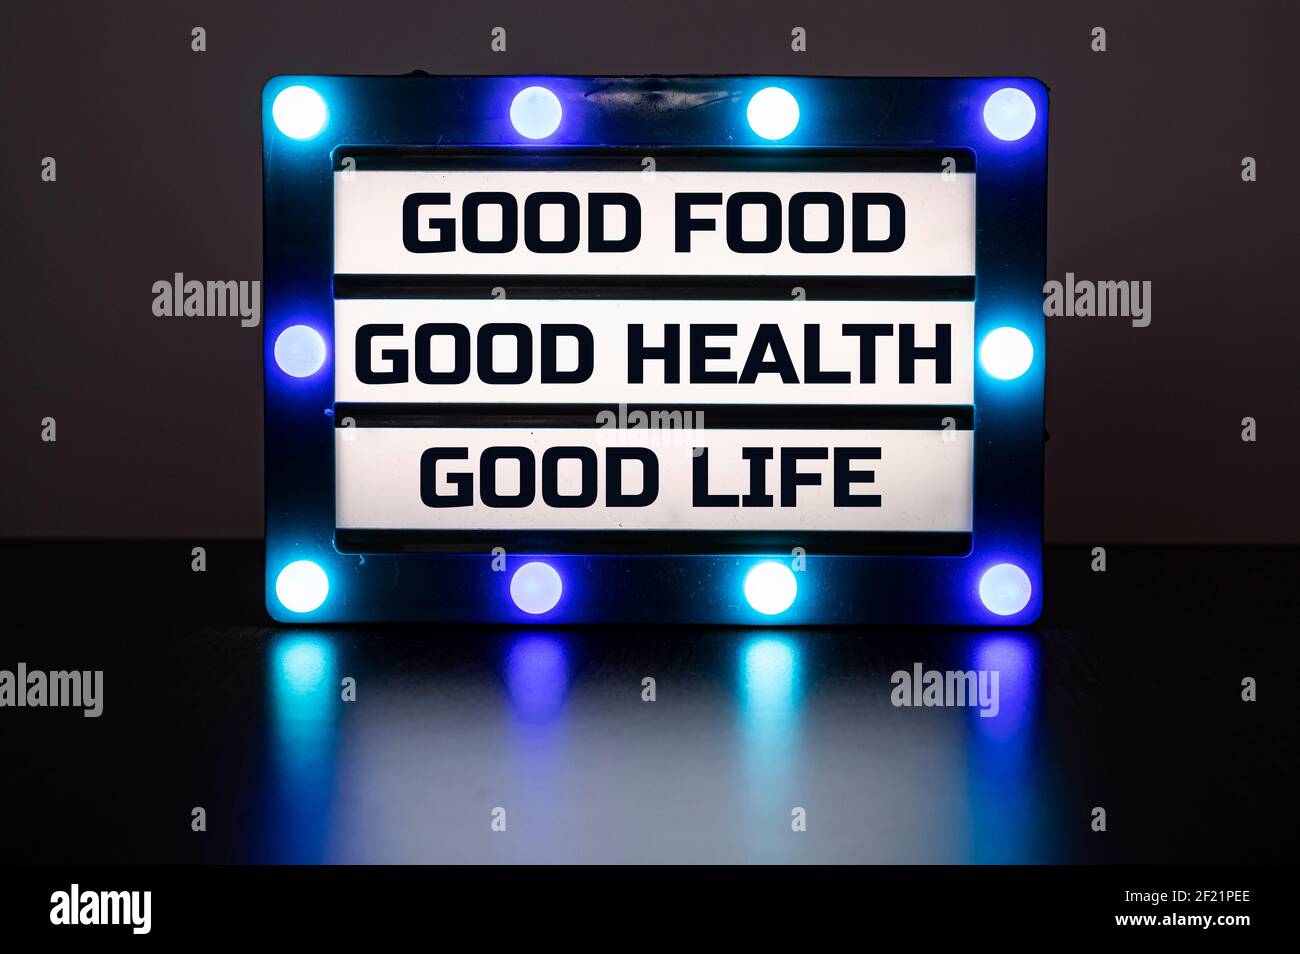 Visionneuse avec des lumières bleues dans l'obscurité avec des mots - bonne nourriture, bonne santé, bonne vie. Banque D'Images